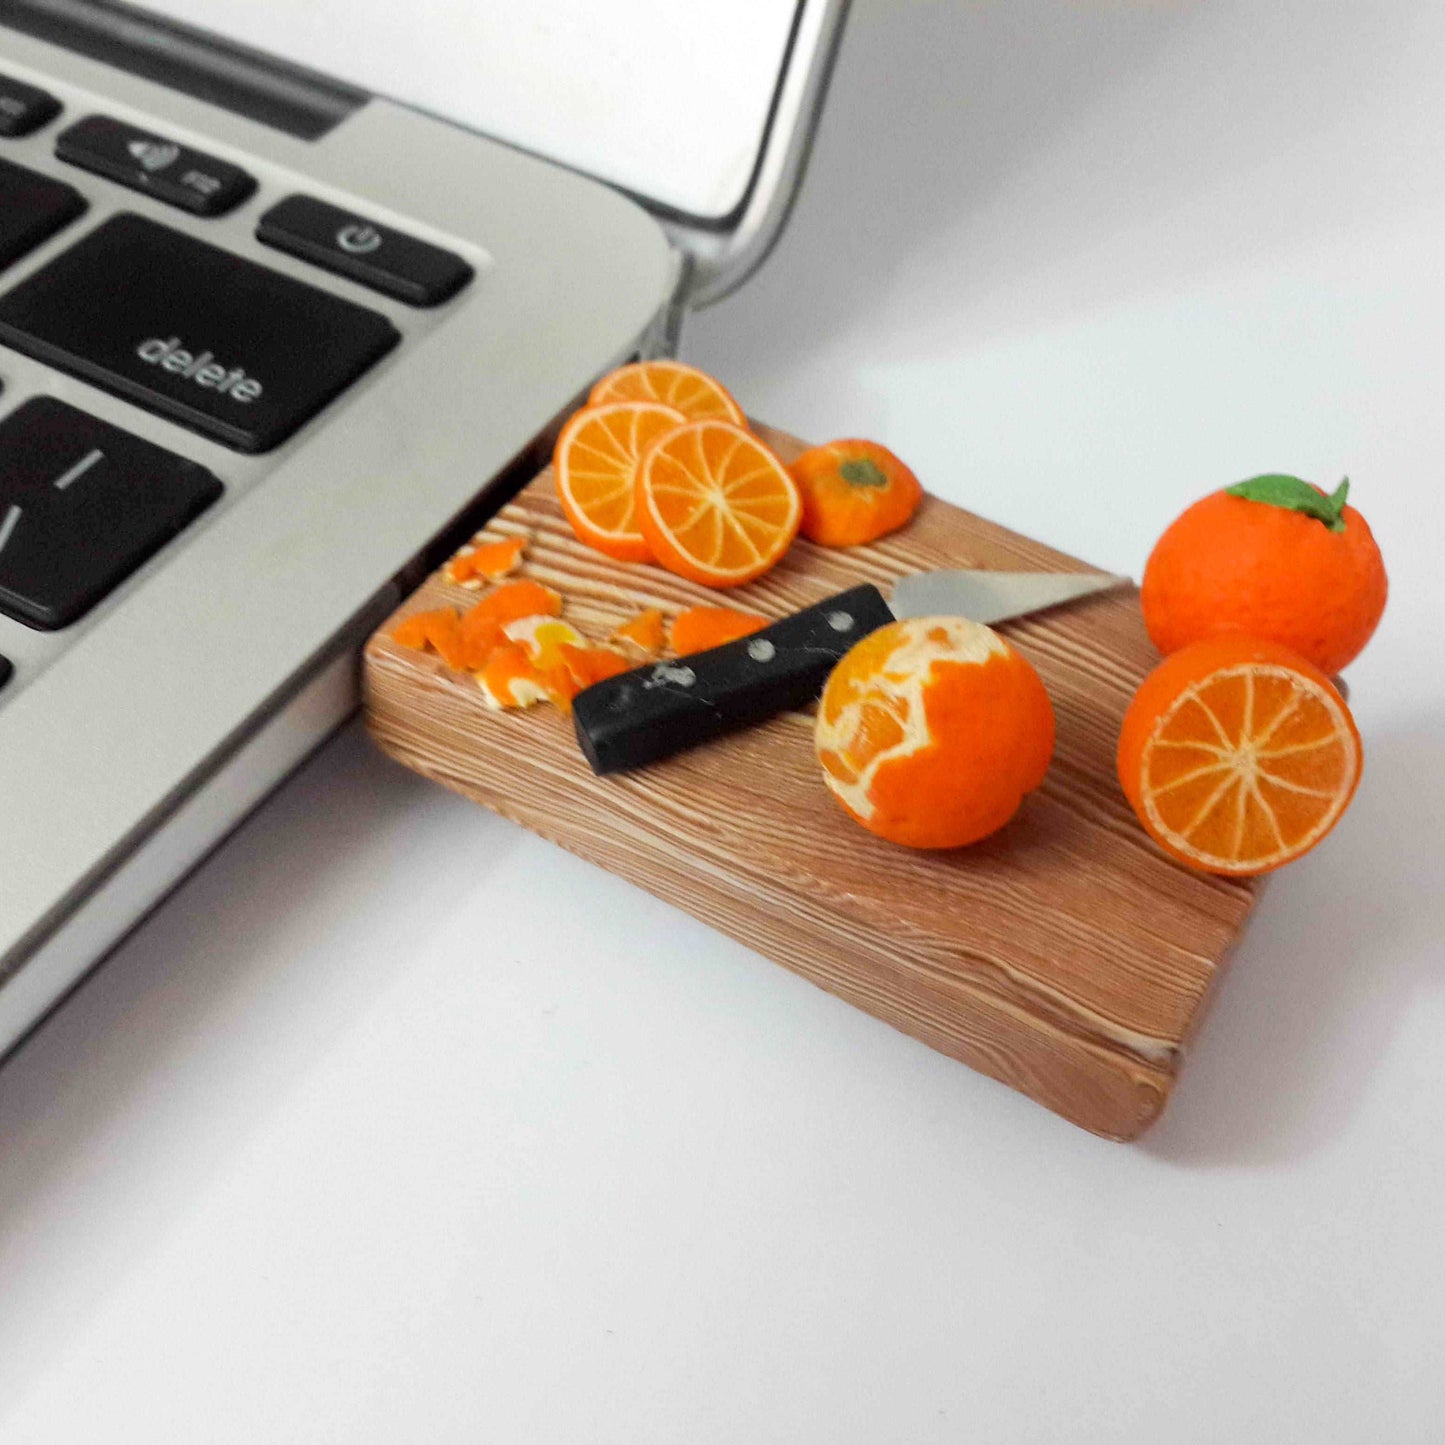 Board Of Miniature Orange Novelty Pen Drive